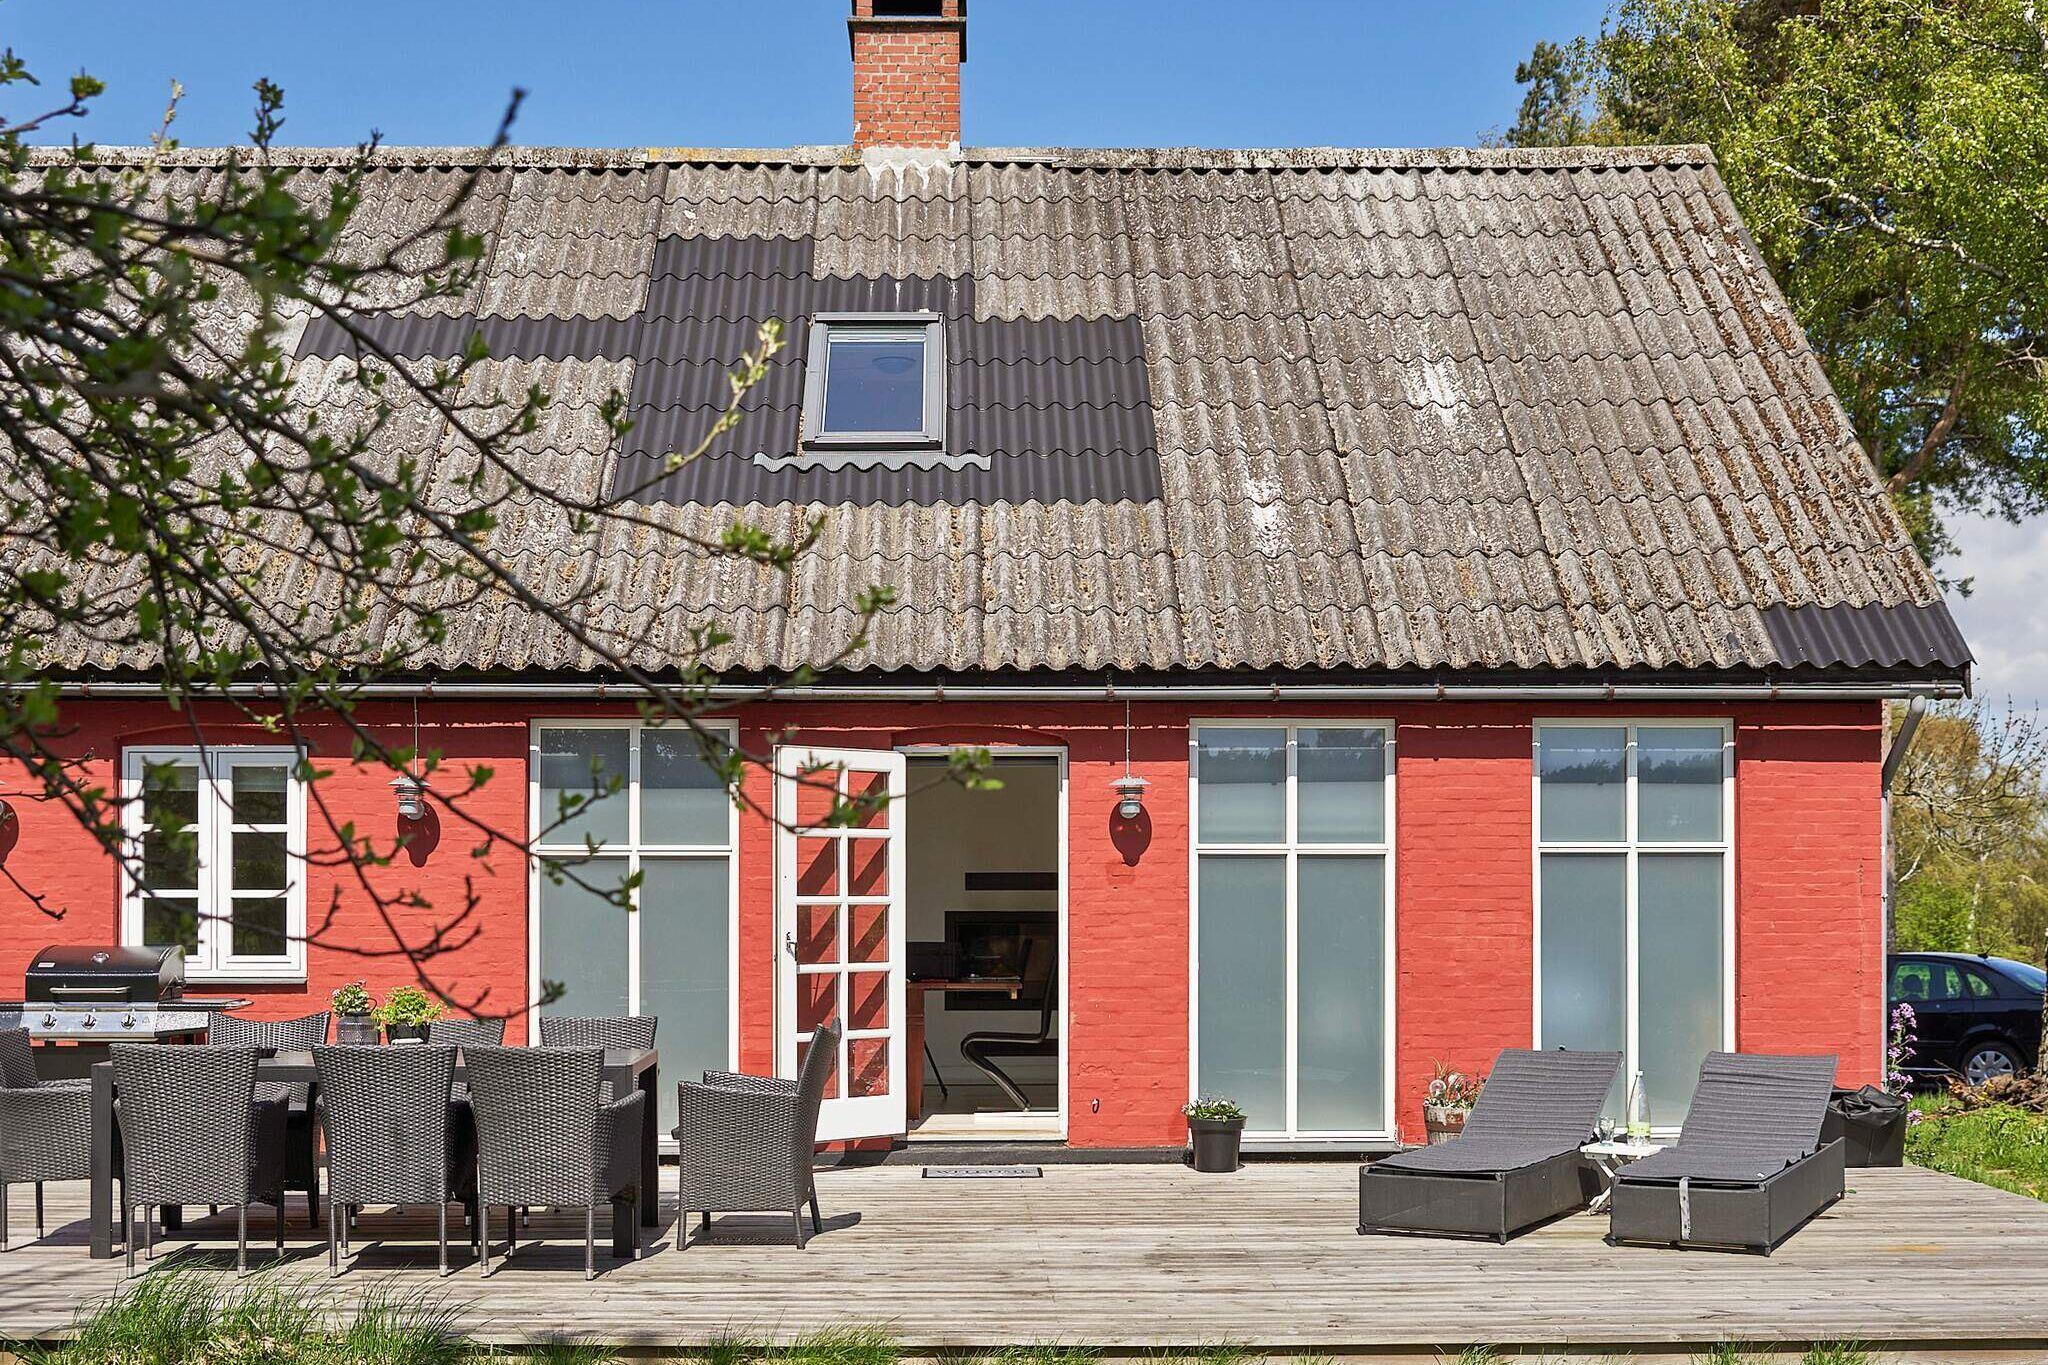 Sommerhus til 12 personer ved Nexø